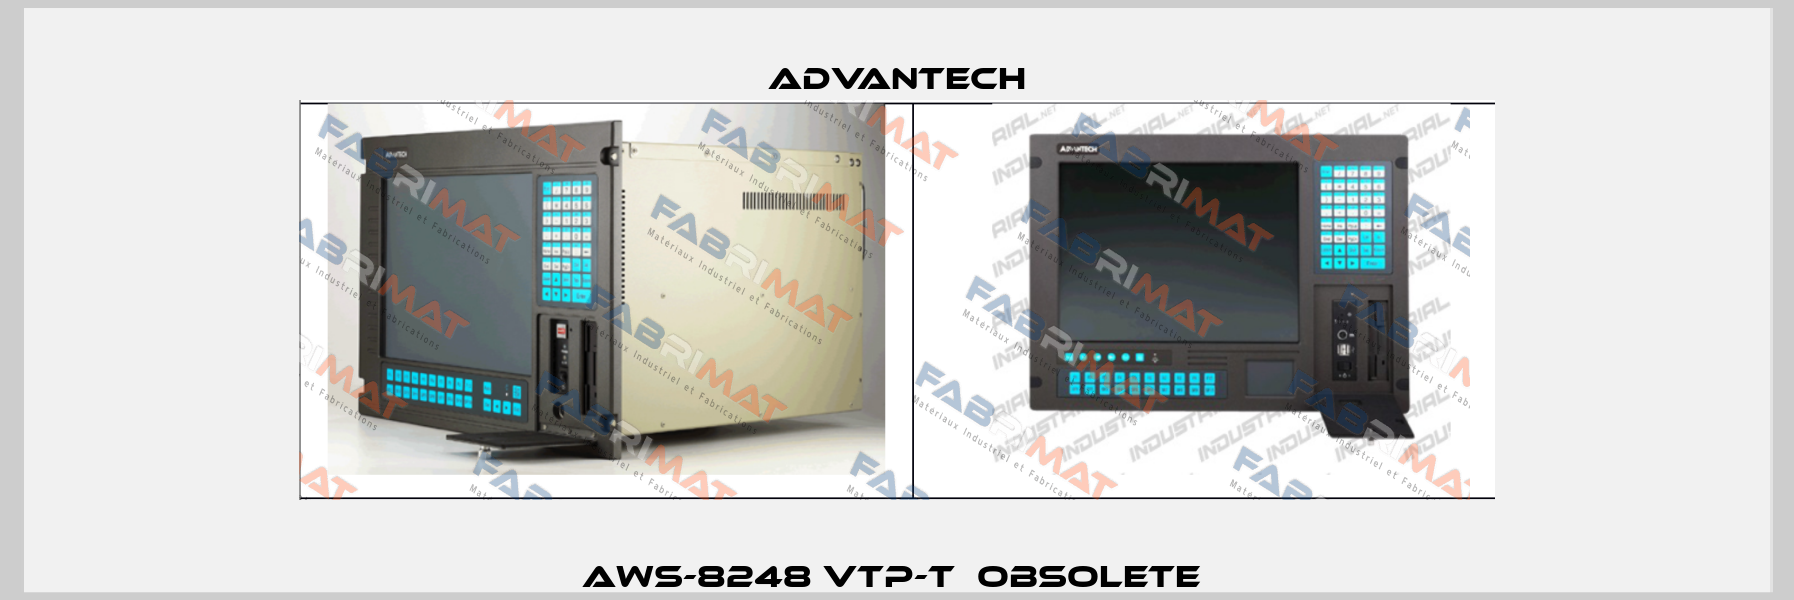 AWS-8248 VTP-T  Obsolete  Advantech